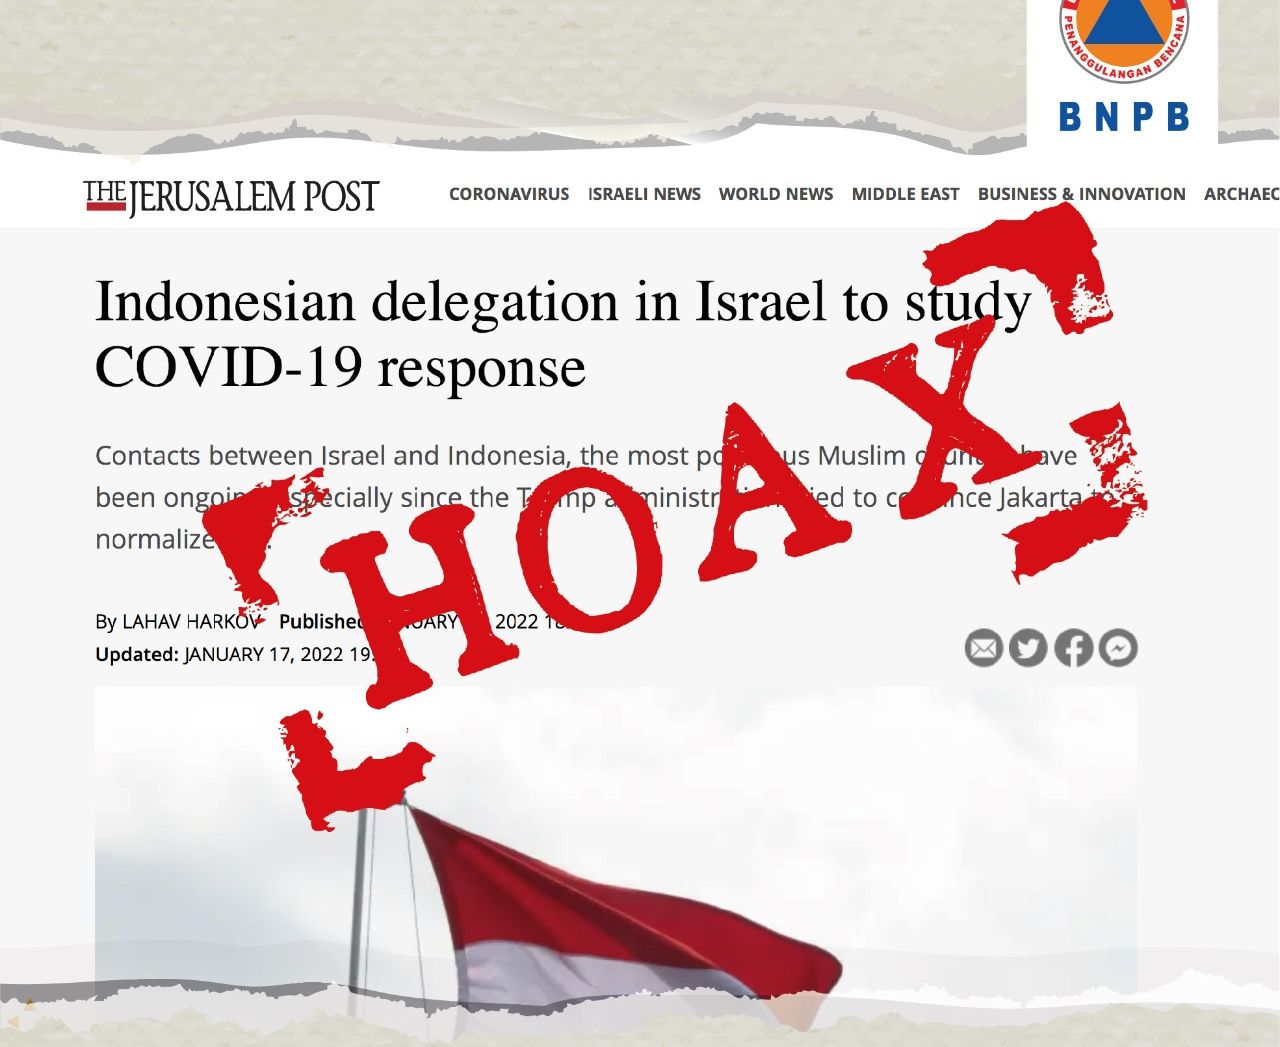 Sebuah pemberitaan yang menyebut delegasi Indonesia bertemu dengan pejabat Israel untuk kepentingan studi Covid-19.